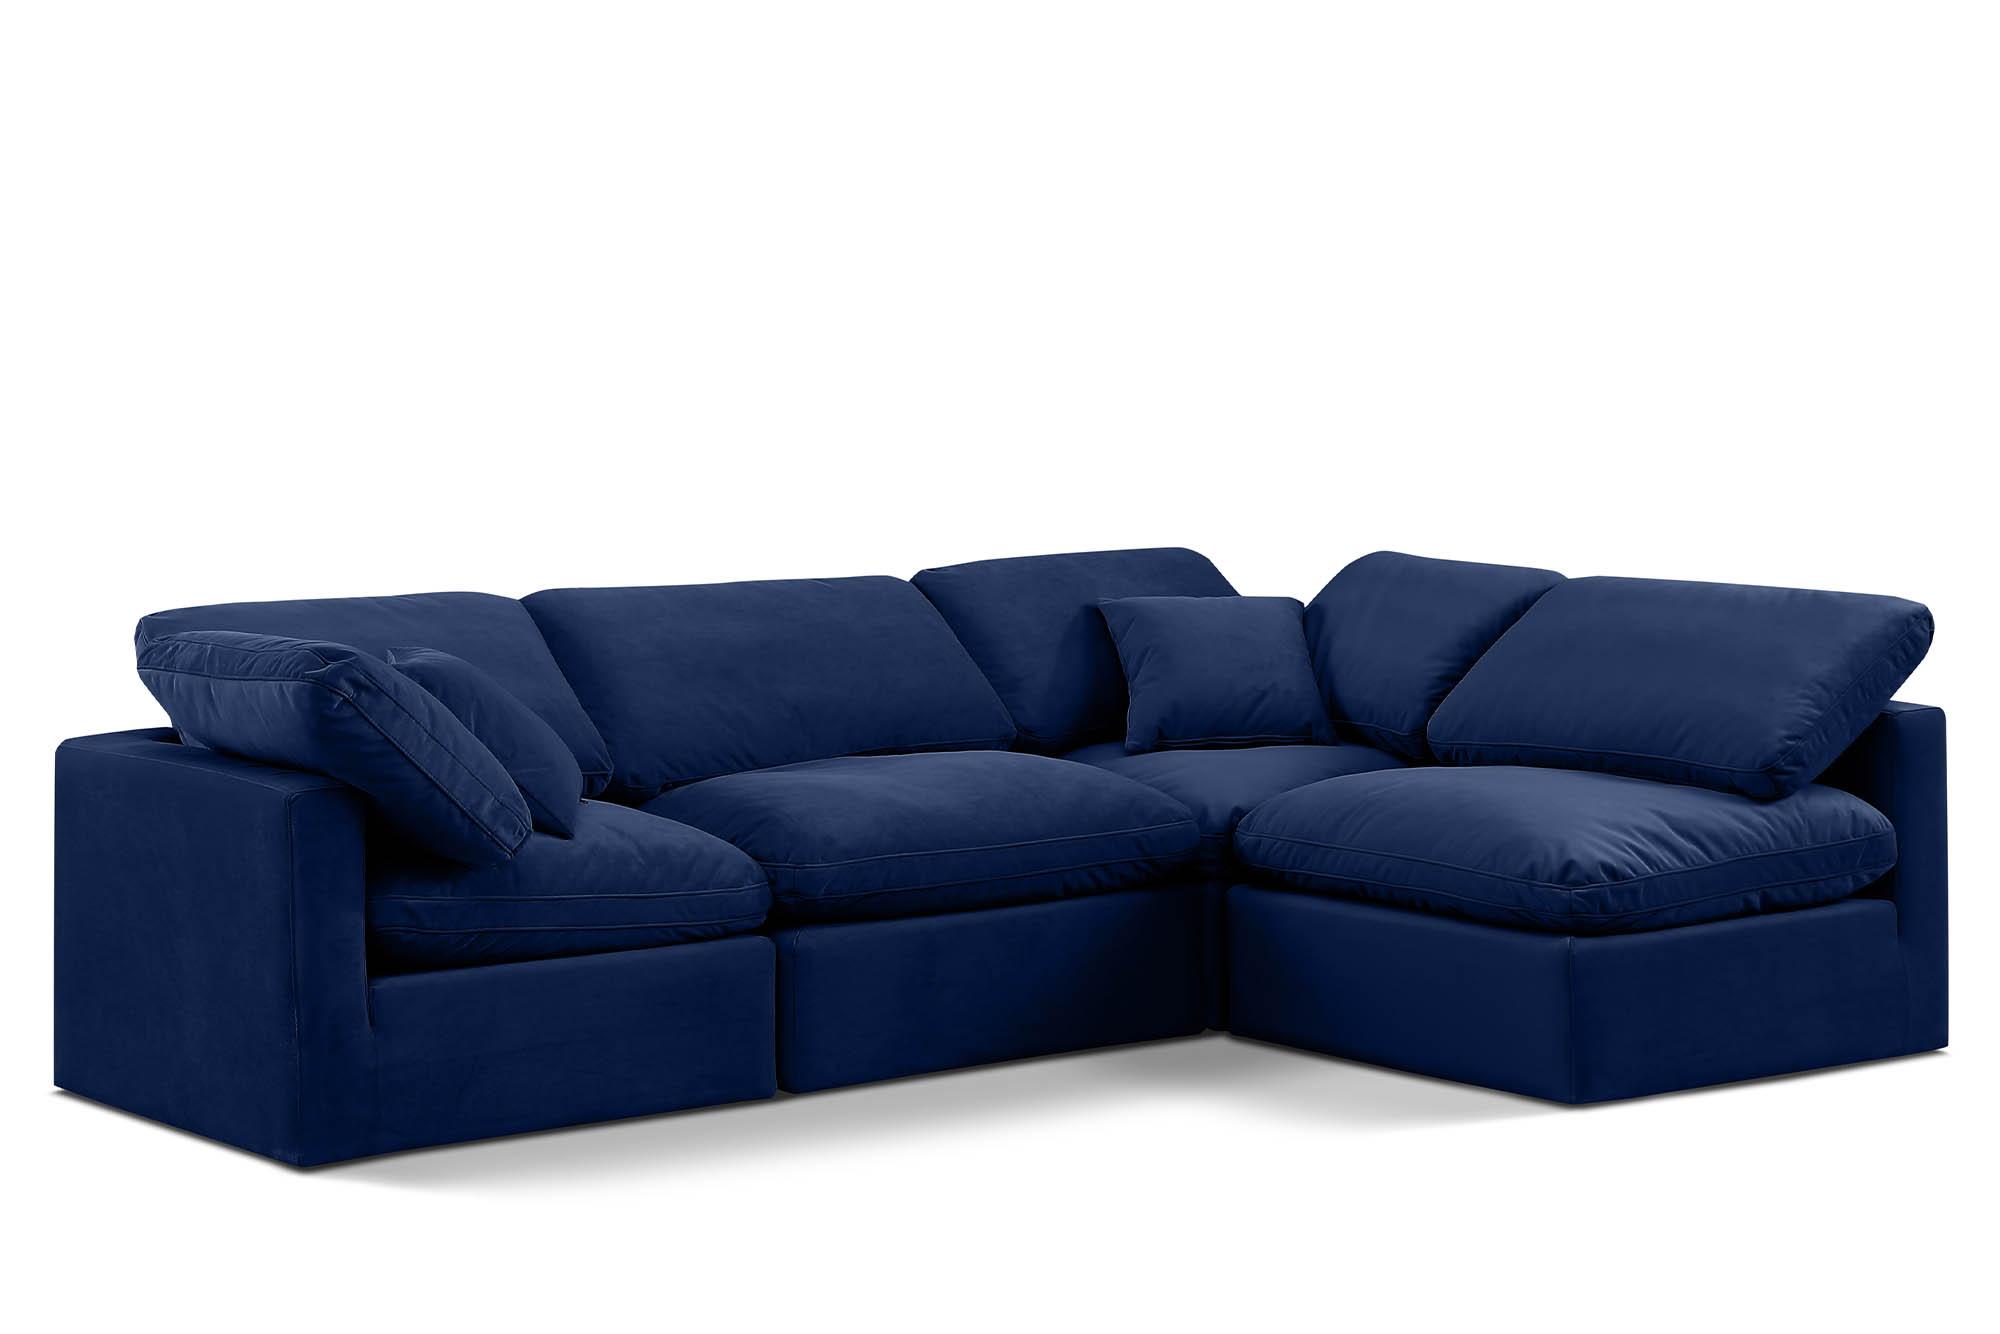 Contemporary, Modern Modular Sectional Sofa INDULGE 147Navy-Sec4B 147Navy-Sec4B in Navy Velvet